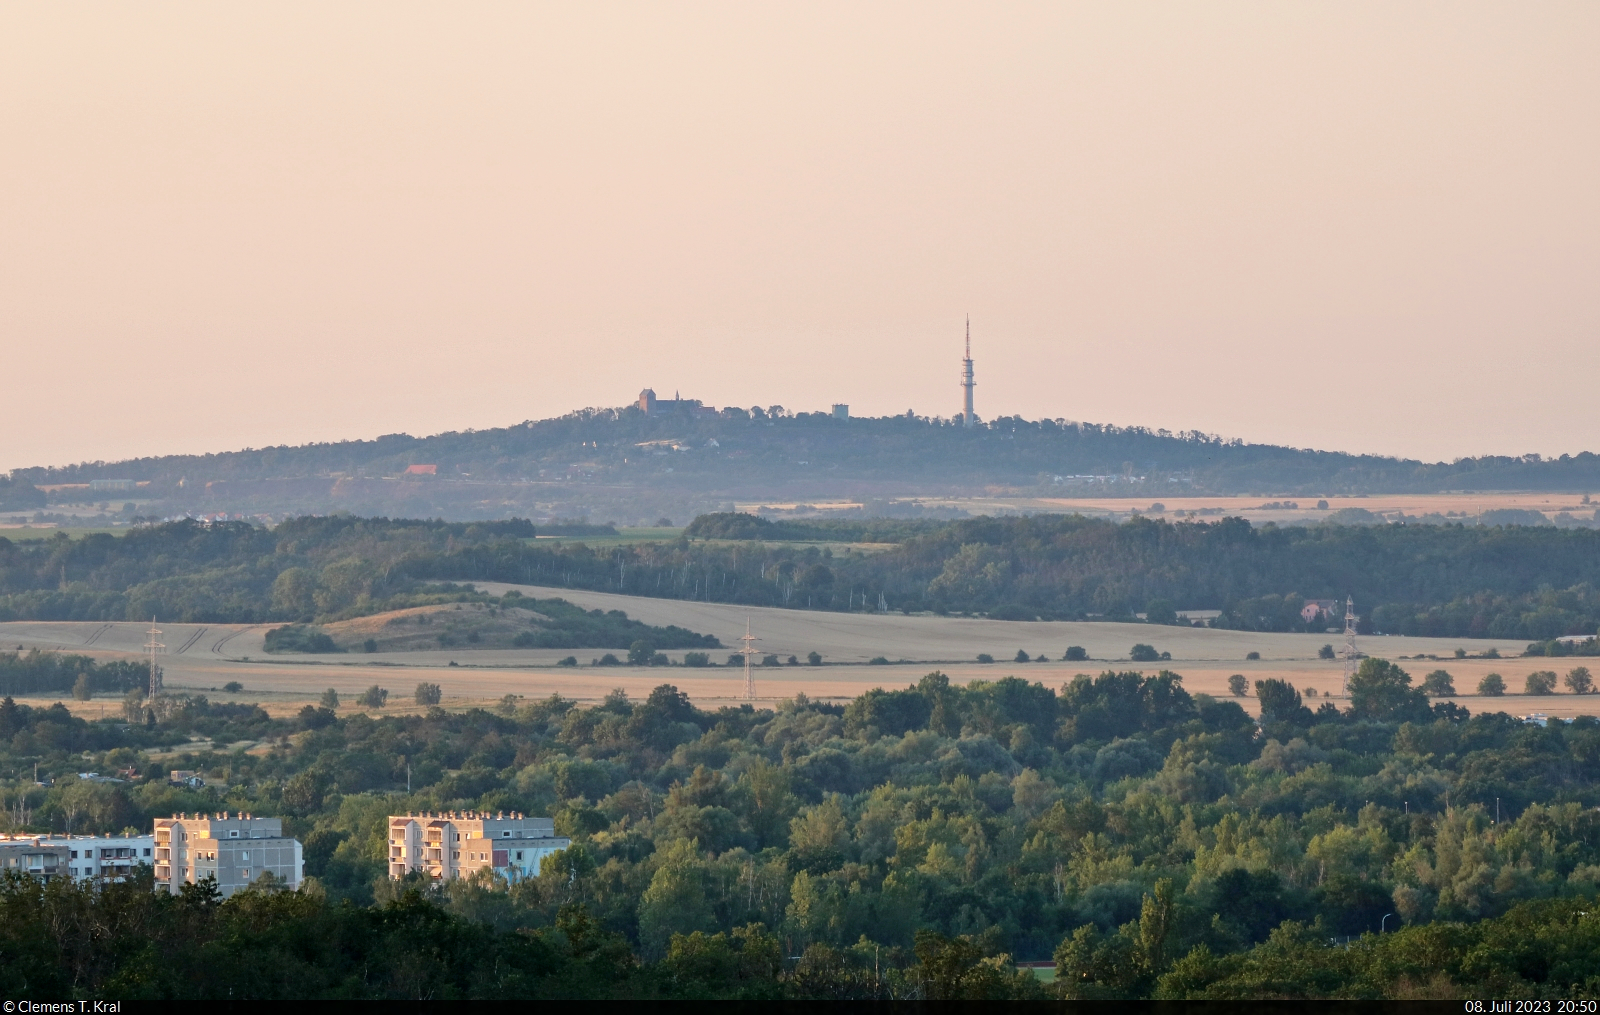 Tele-Blick vom Kolkturm in der Dölauer Heide auf den Petersberg, mit 250 Metern über NN die höchste Erhebung im ehemaligen Saalkreis bei Halle (Saale).

🕓 8.7.2023 | 20:50 Uhr